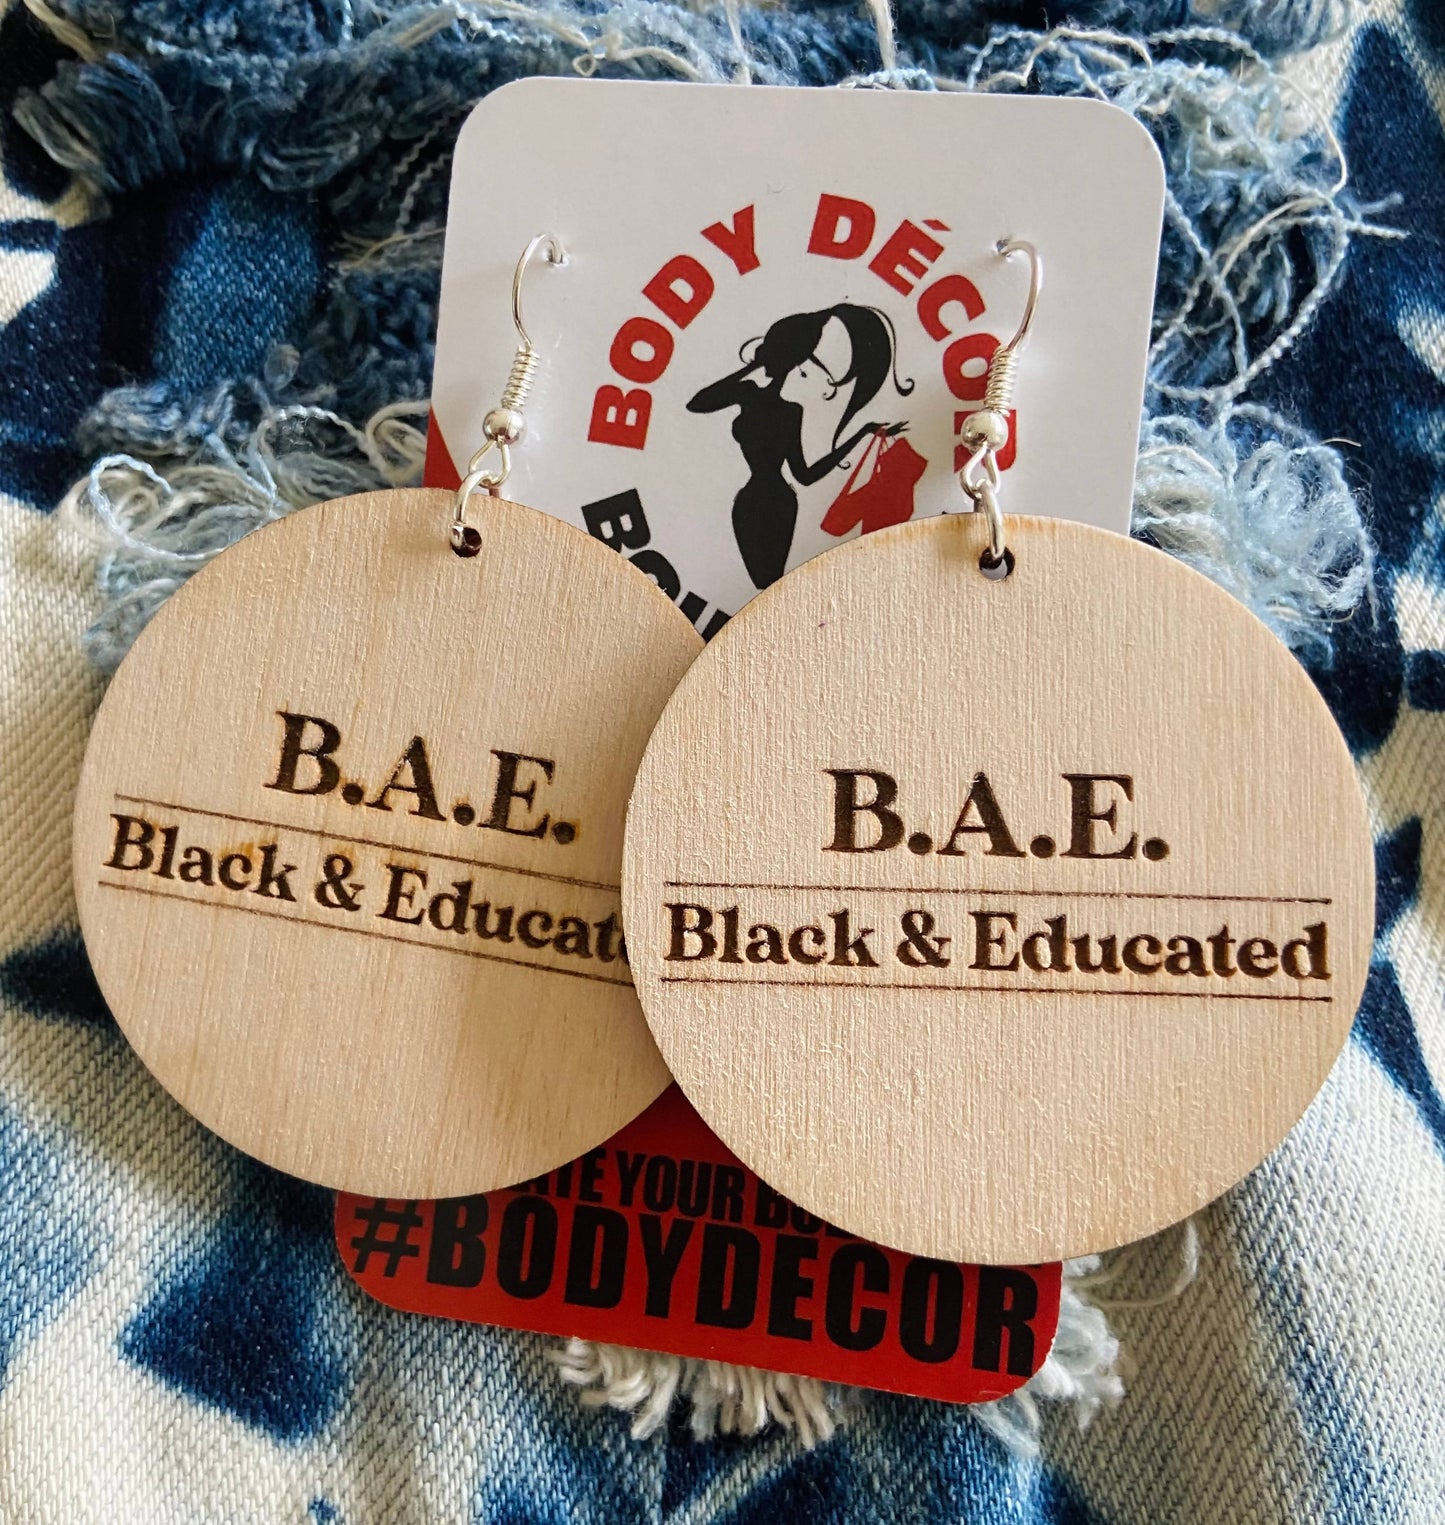 B. A. E. (Black & Educated)